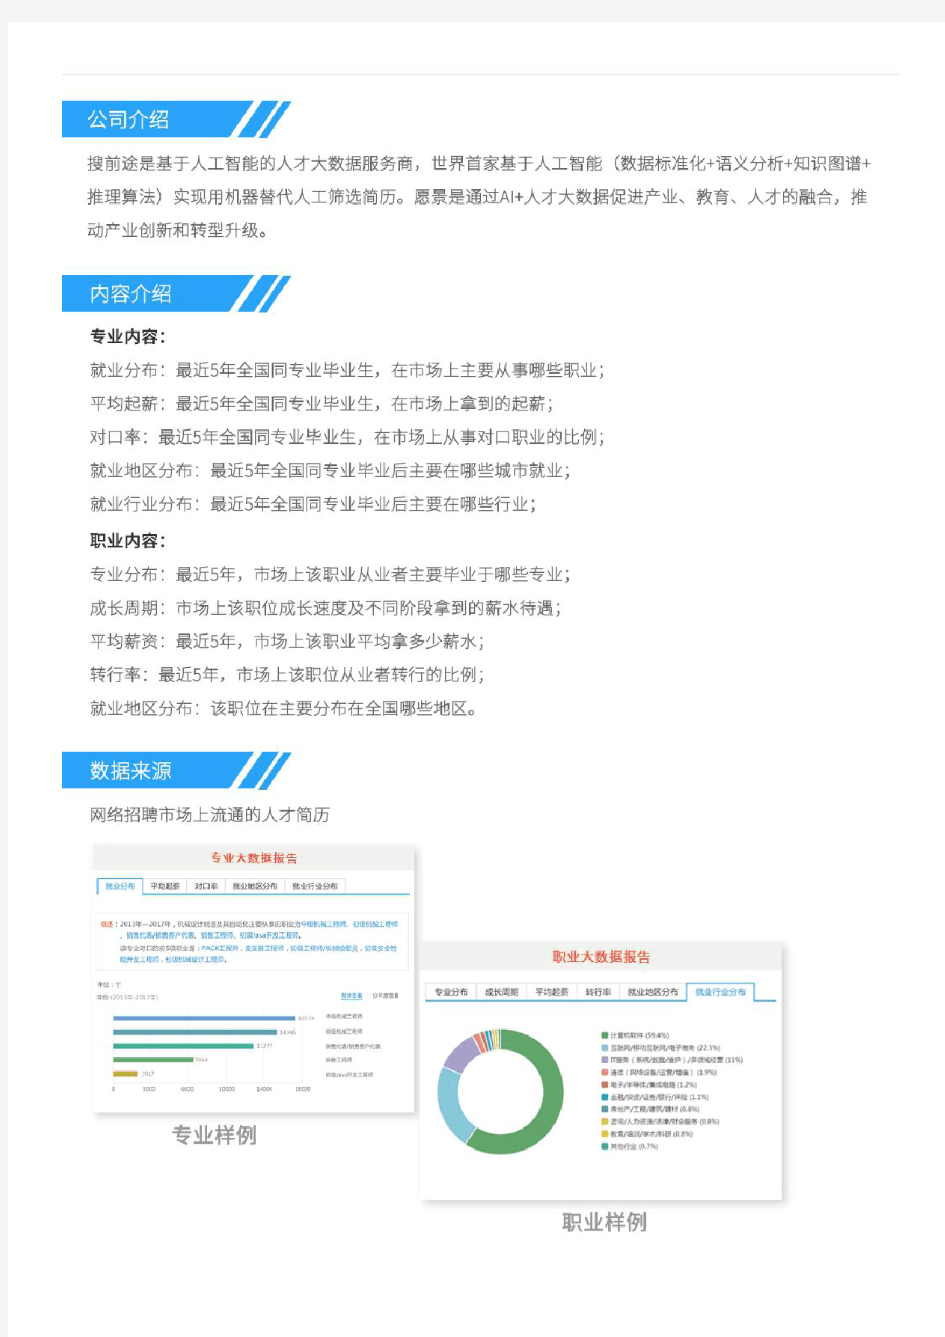 2013-2017年武汉大学自动化专业毕业生就业大数据报告